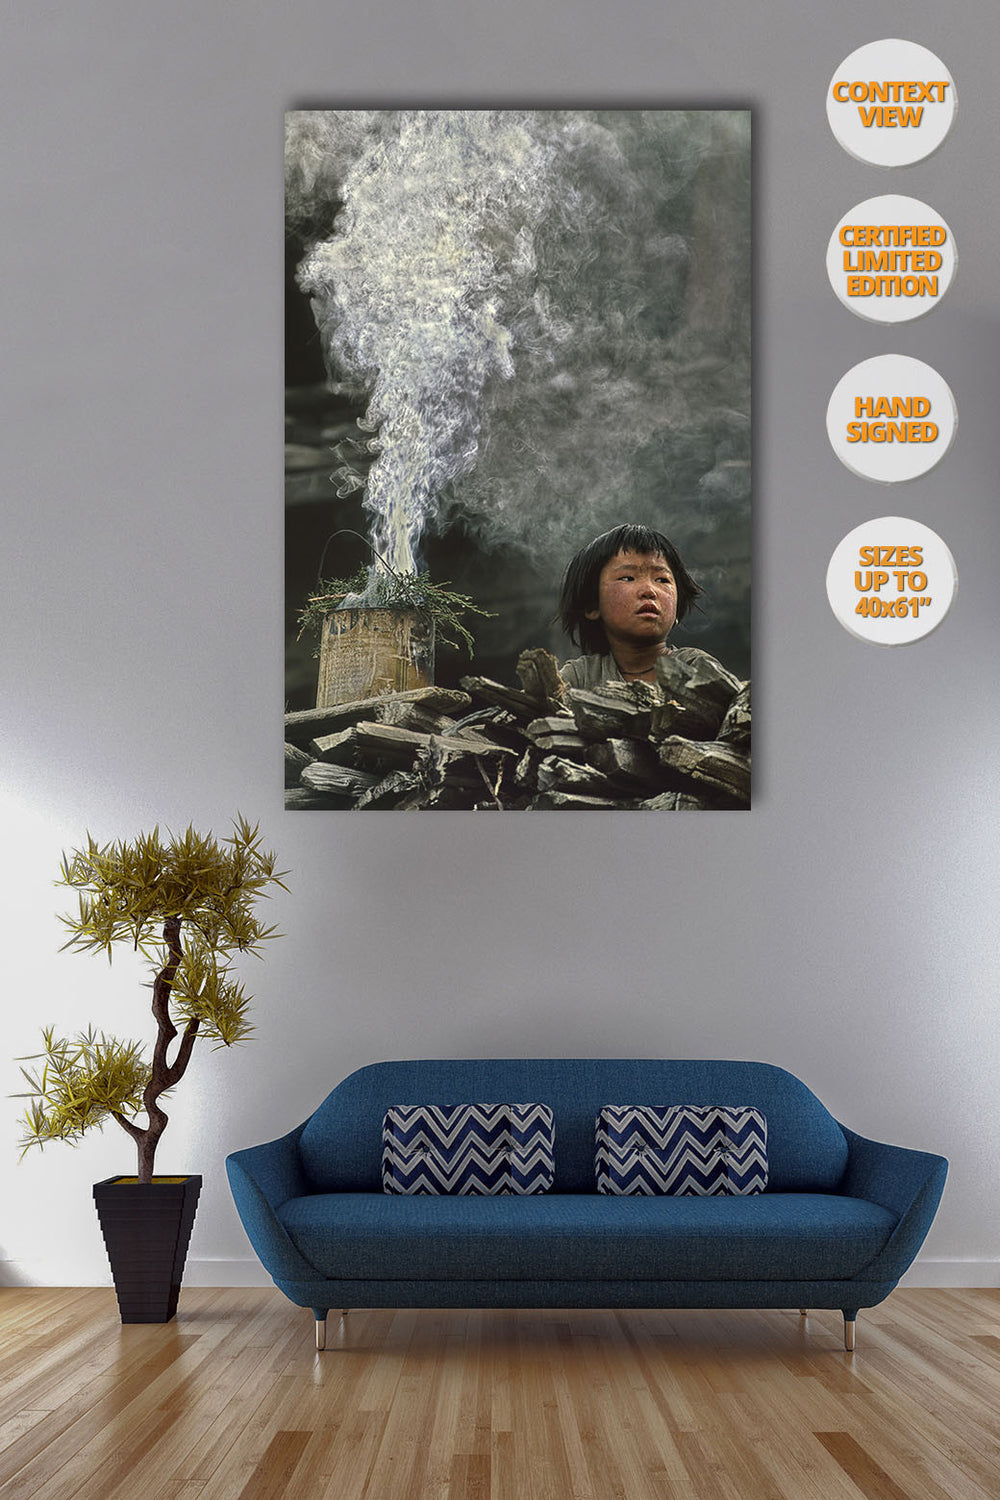 Boy and Incense smoke, Himalaya, Nepal. | View of the Print hanged over sofa.